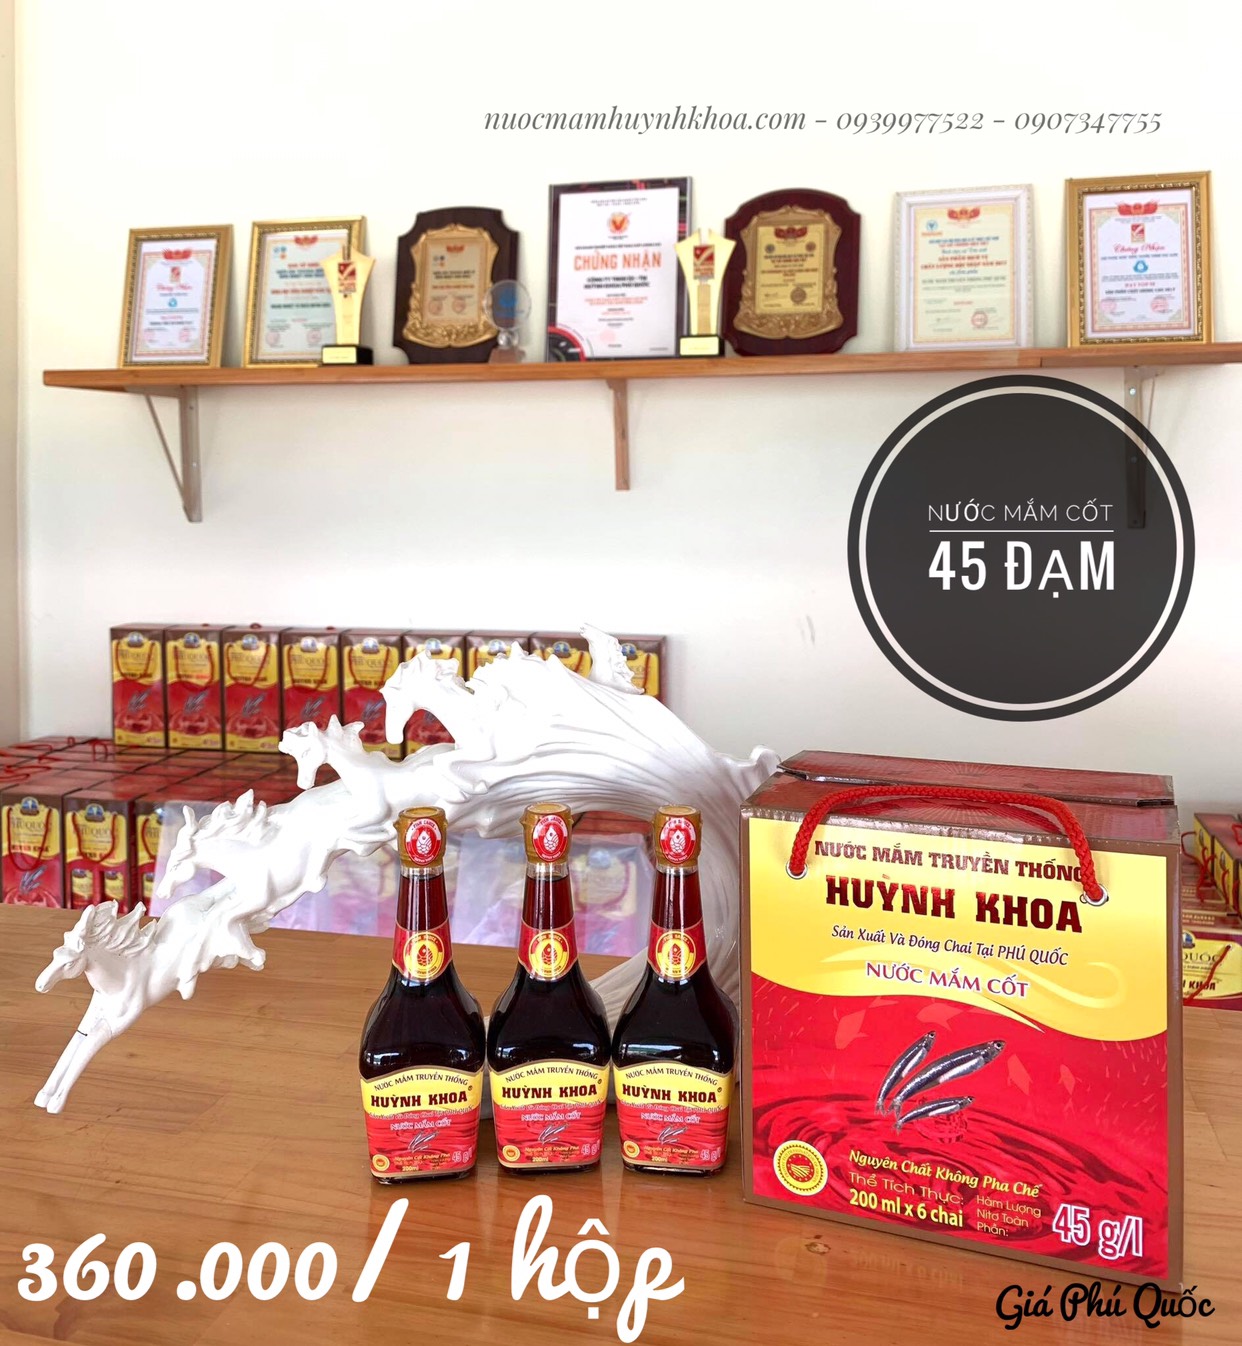 Đặc Sản Kiên Giang - Nước mắm truyền thống Phú Quốc Huỳnh Khoa - 45 độ đạm - Chai 200ml hộp 6 chai